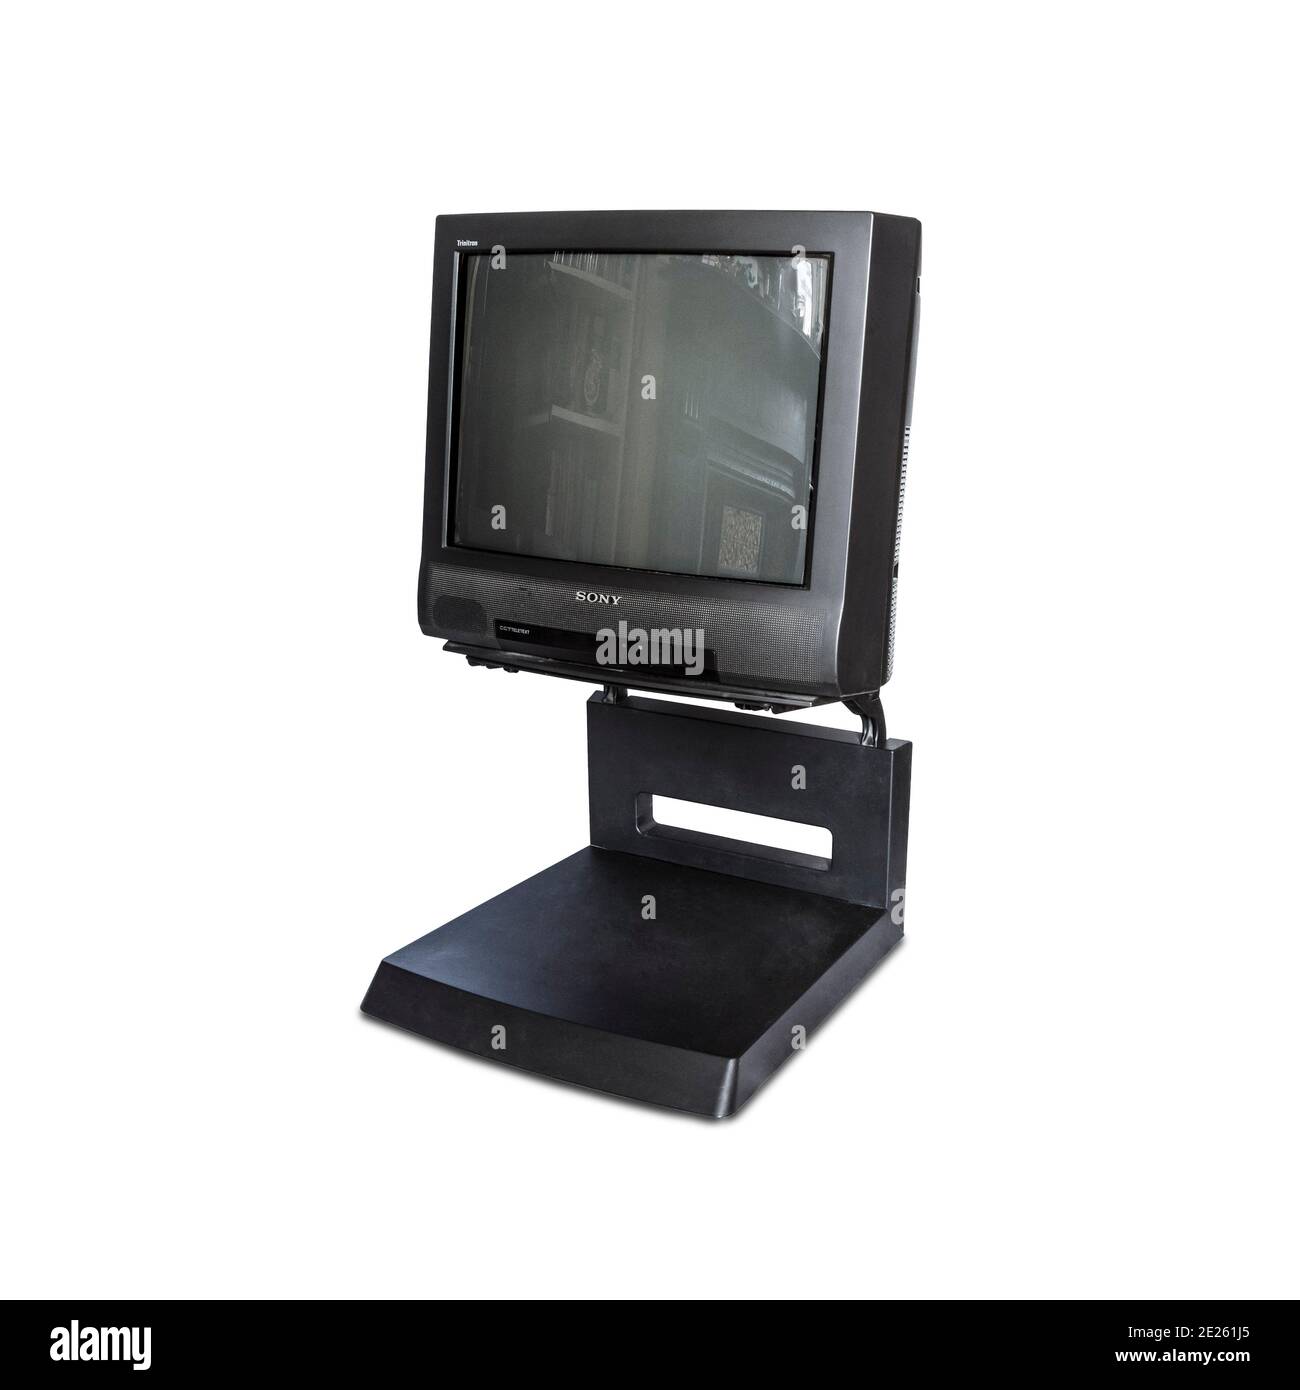 Un téléviseur à tube cathodique Sony Trinitron noir 1996 installé sur son support, isolé sur un fond blanc Banque D'Images